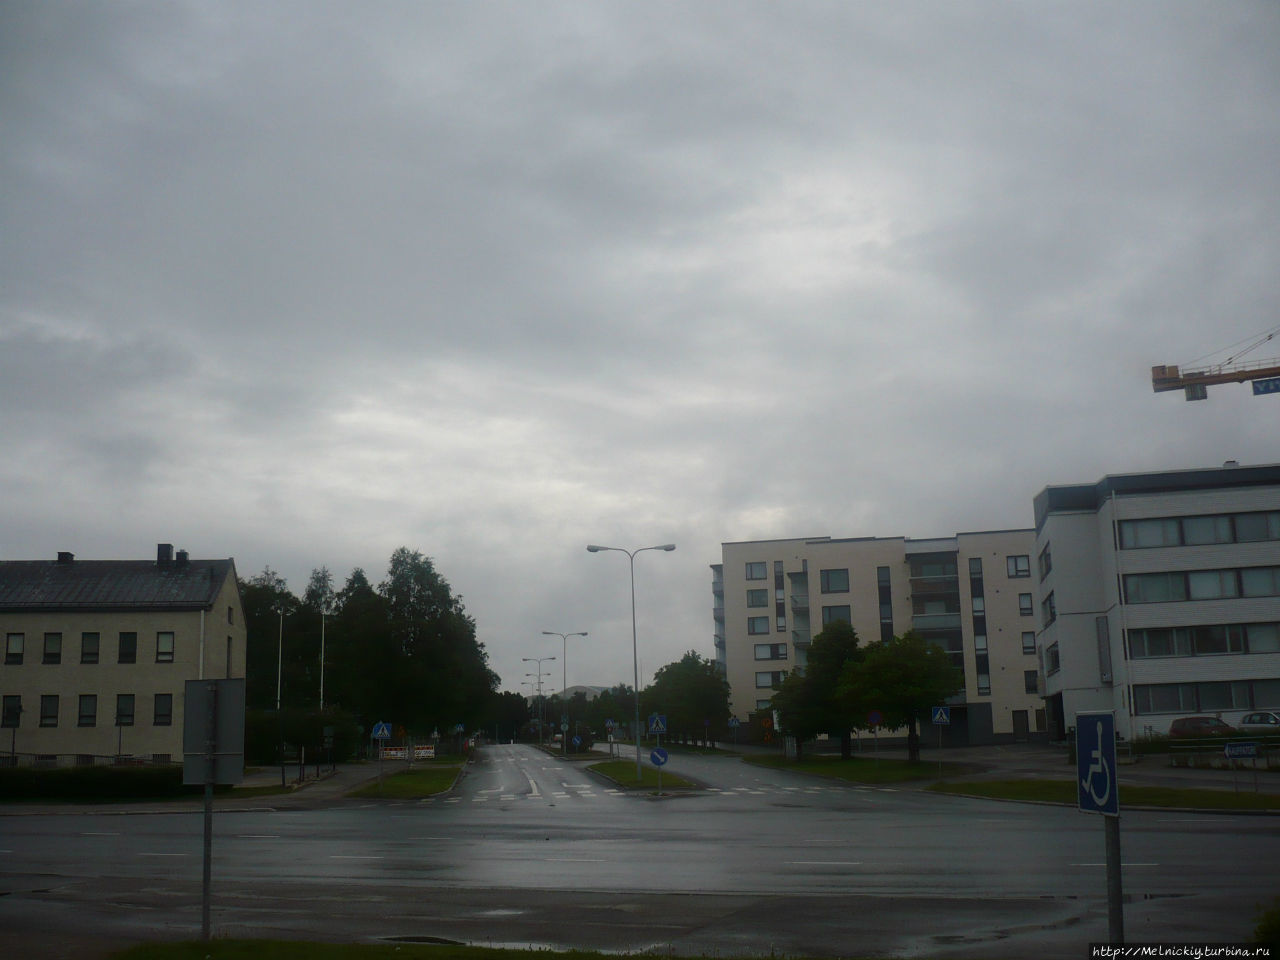 Крупнейший по площади город Европы Рованиеми, Финляндия